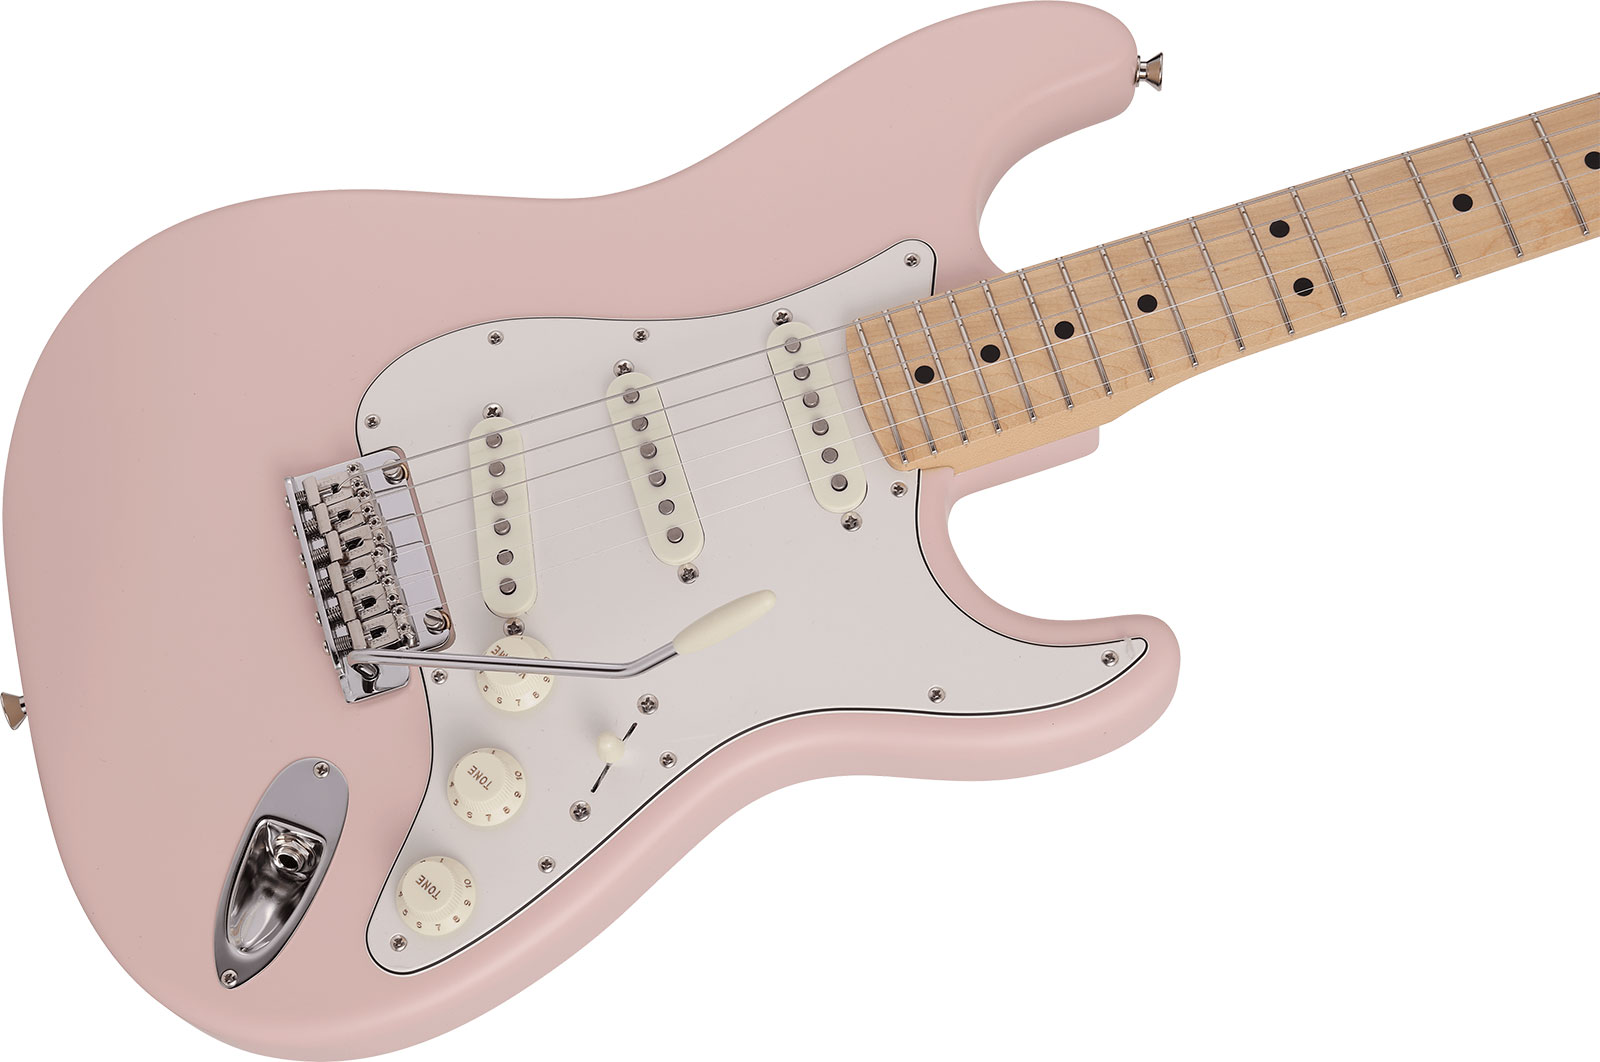 Fender Strat Junior Mij Jap 3s Trem Rw - Satin Shell Pink - Electric guitar for kids - Variation 2